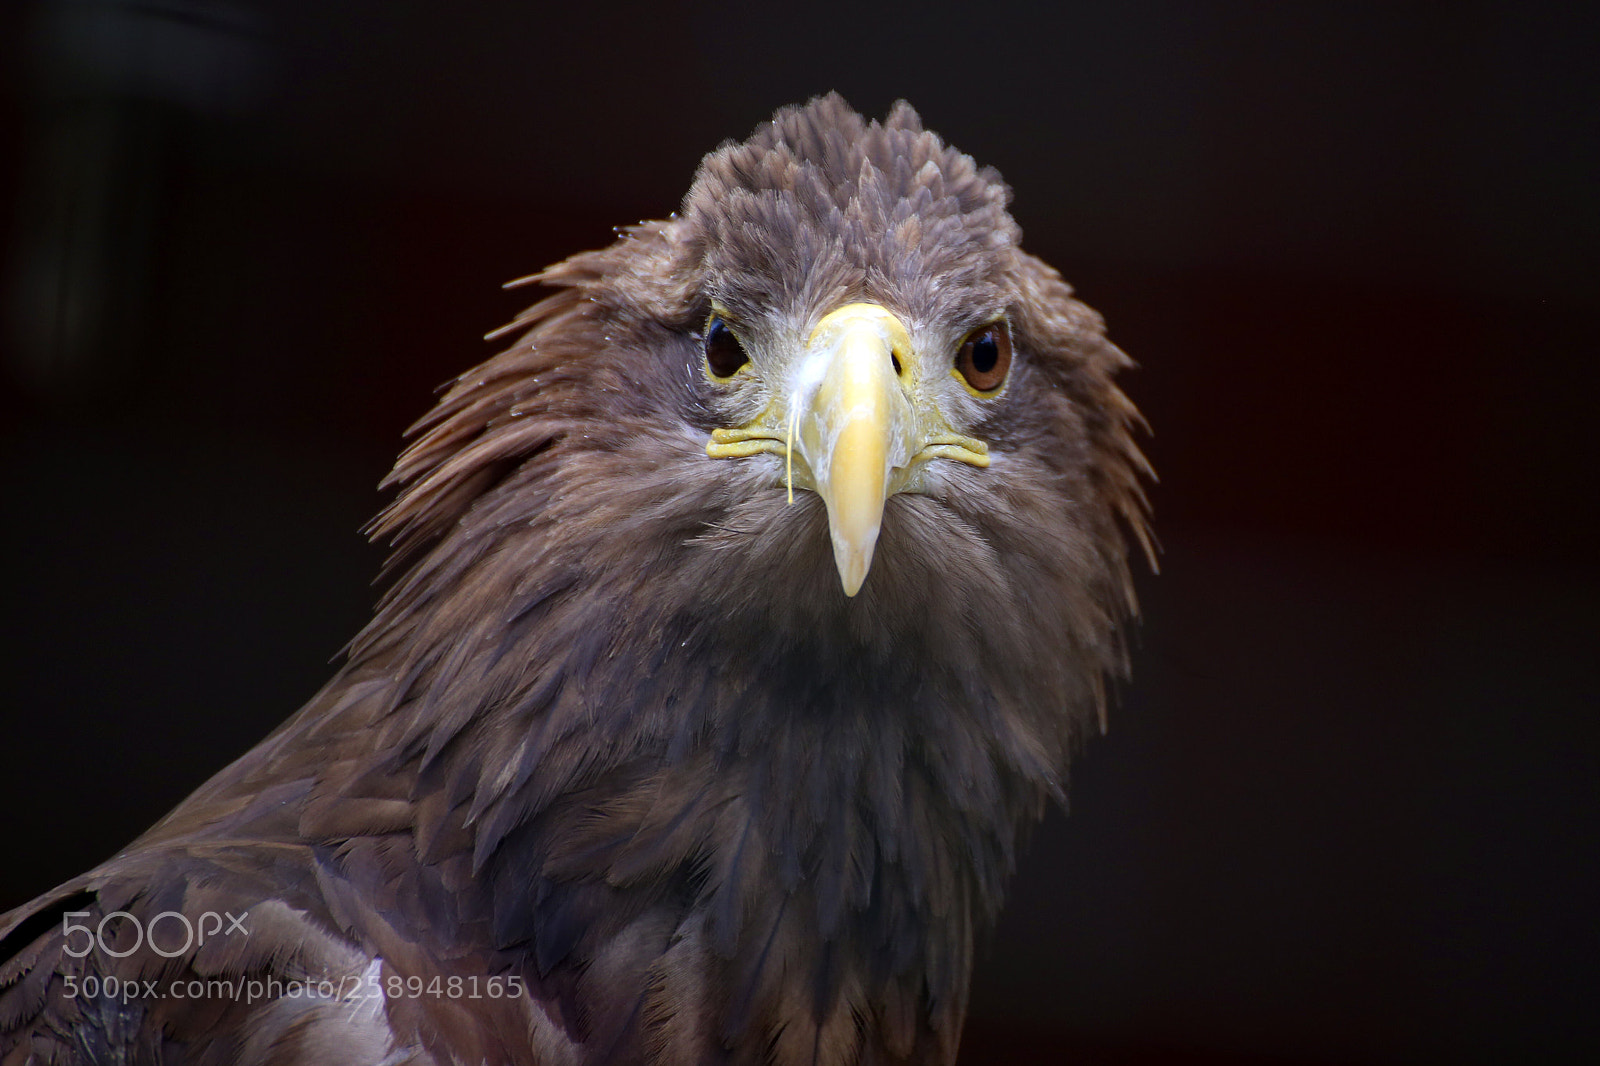 Canon EOS 6D sample photo. Bird of prey photography